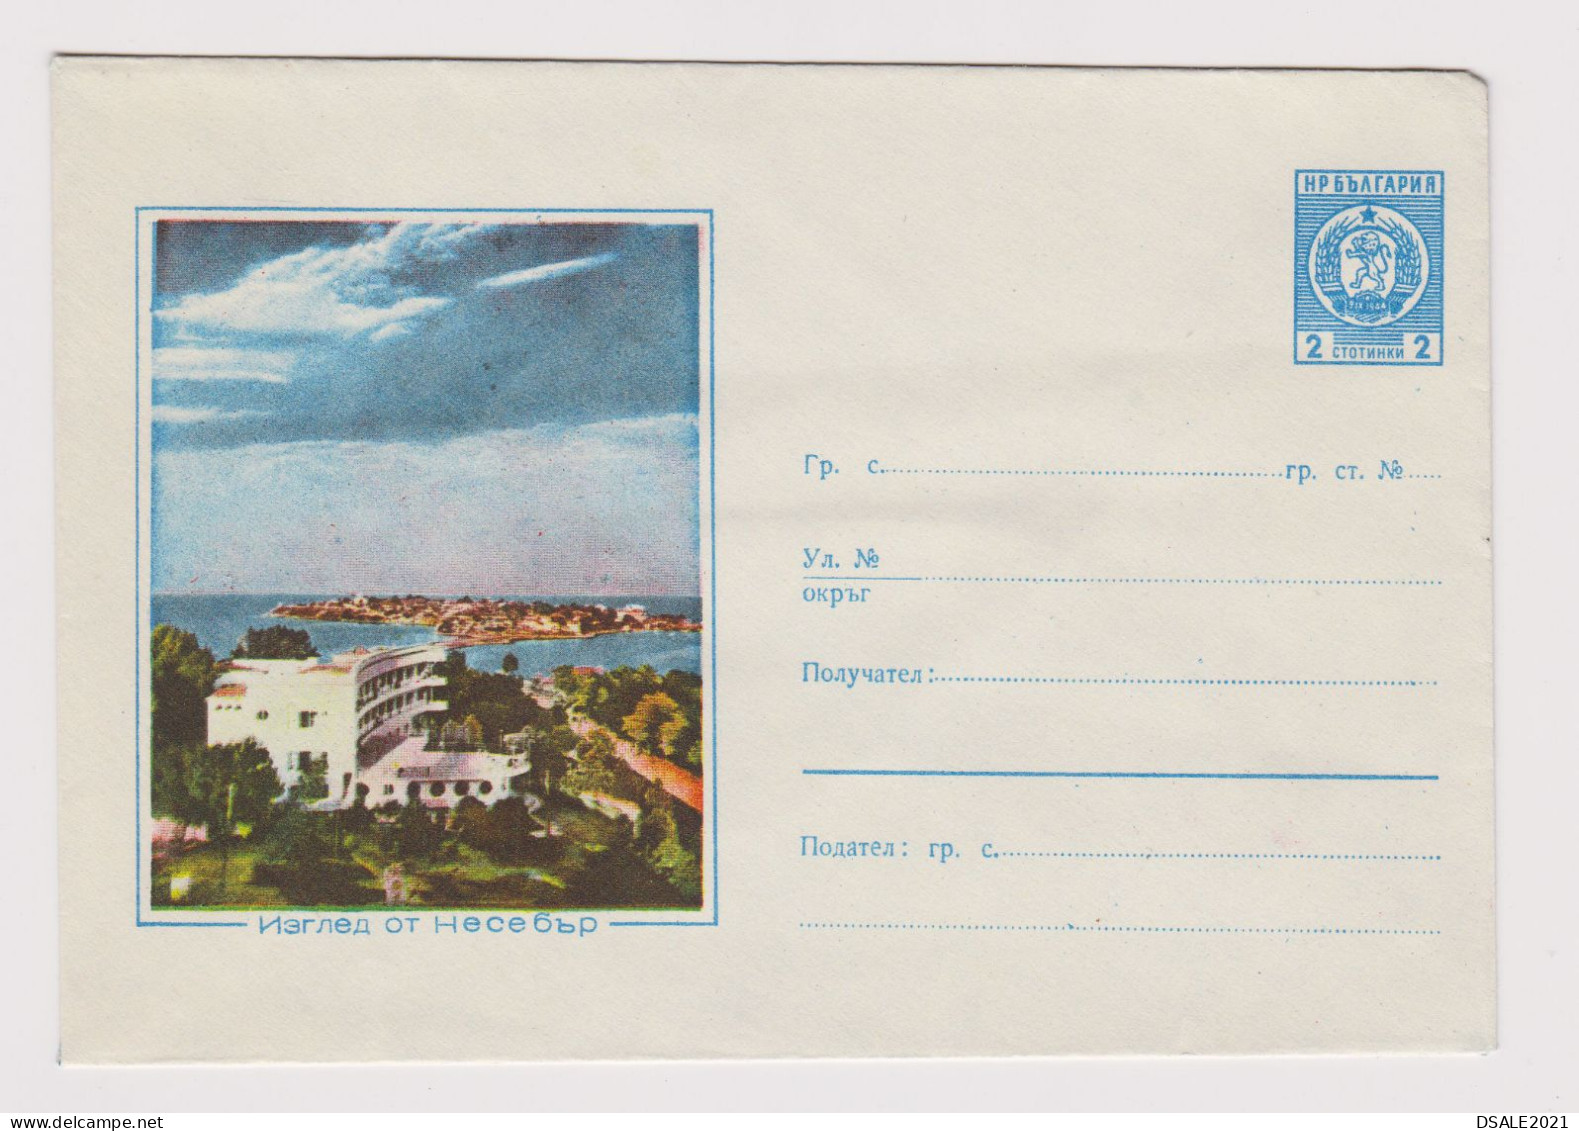 Bulgaria Bulgarien Bulgarie 1962 Bulgarian Postal Stationery Cover PSE, Entier, Unused, NESEBAR (55820) - Enveloppes